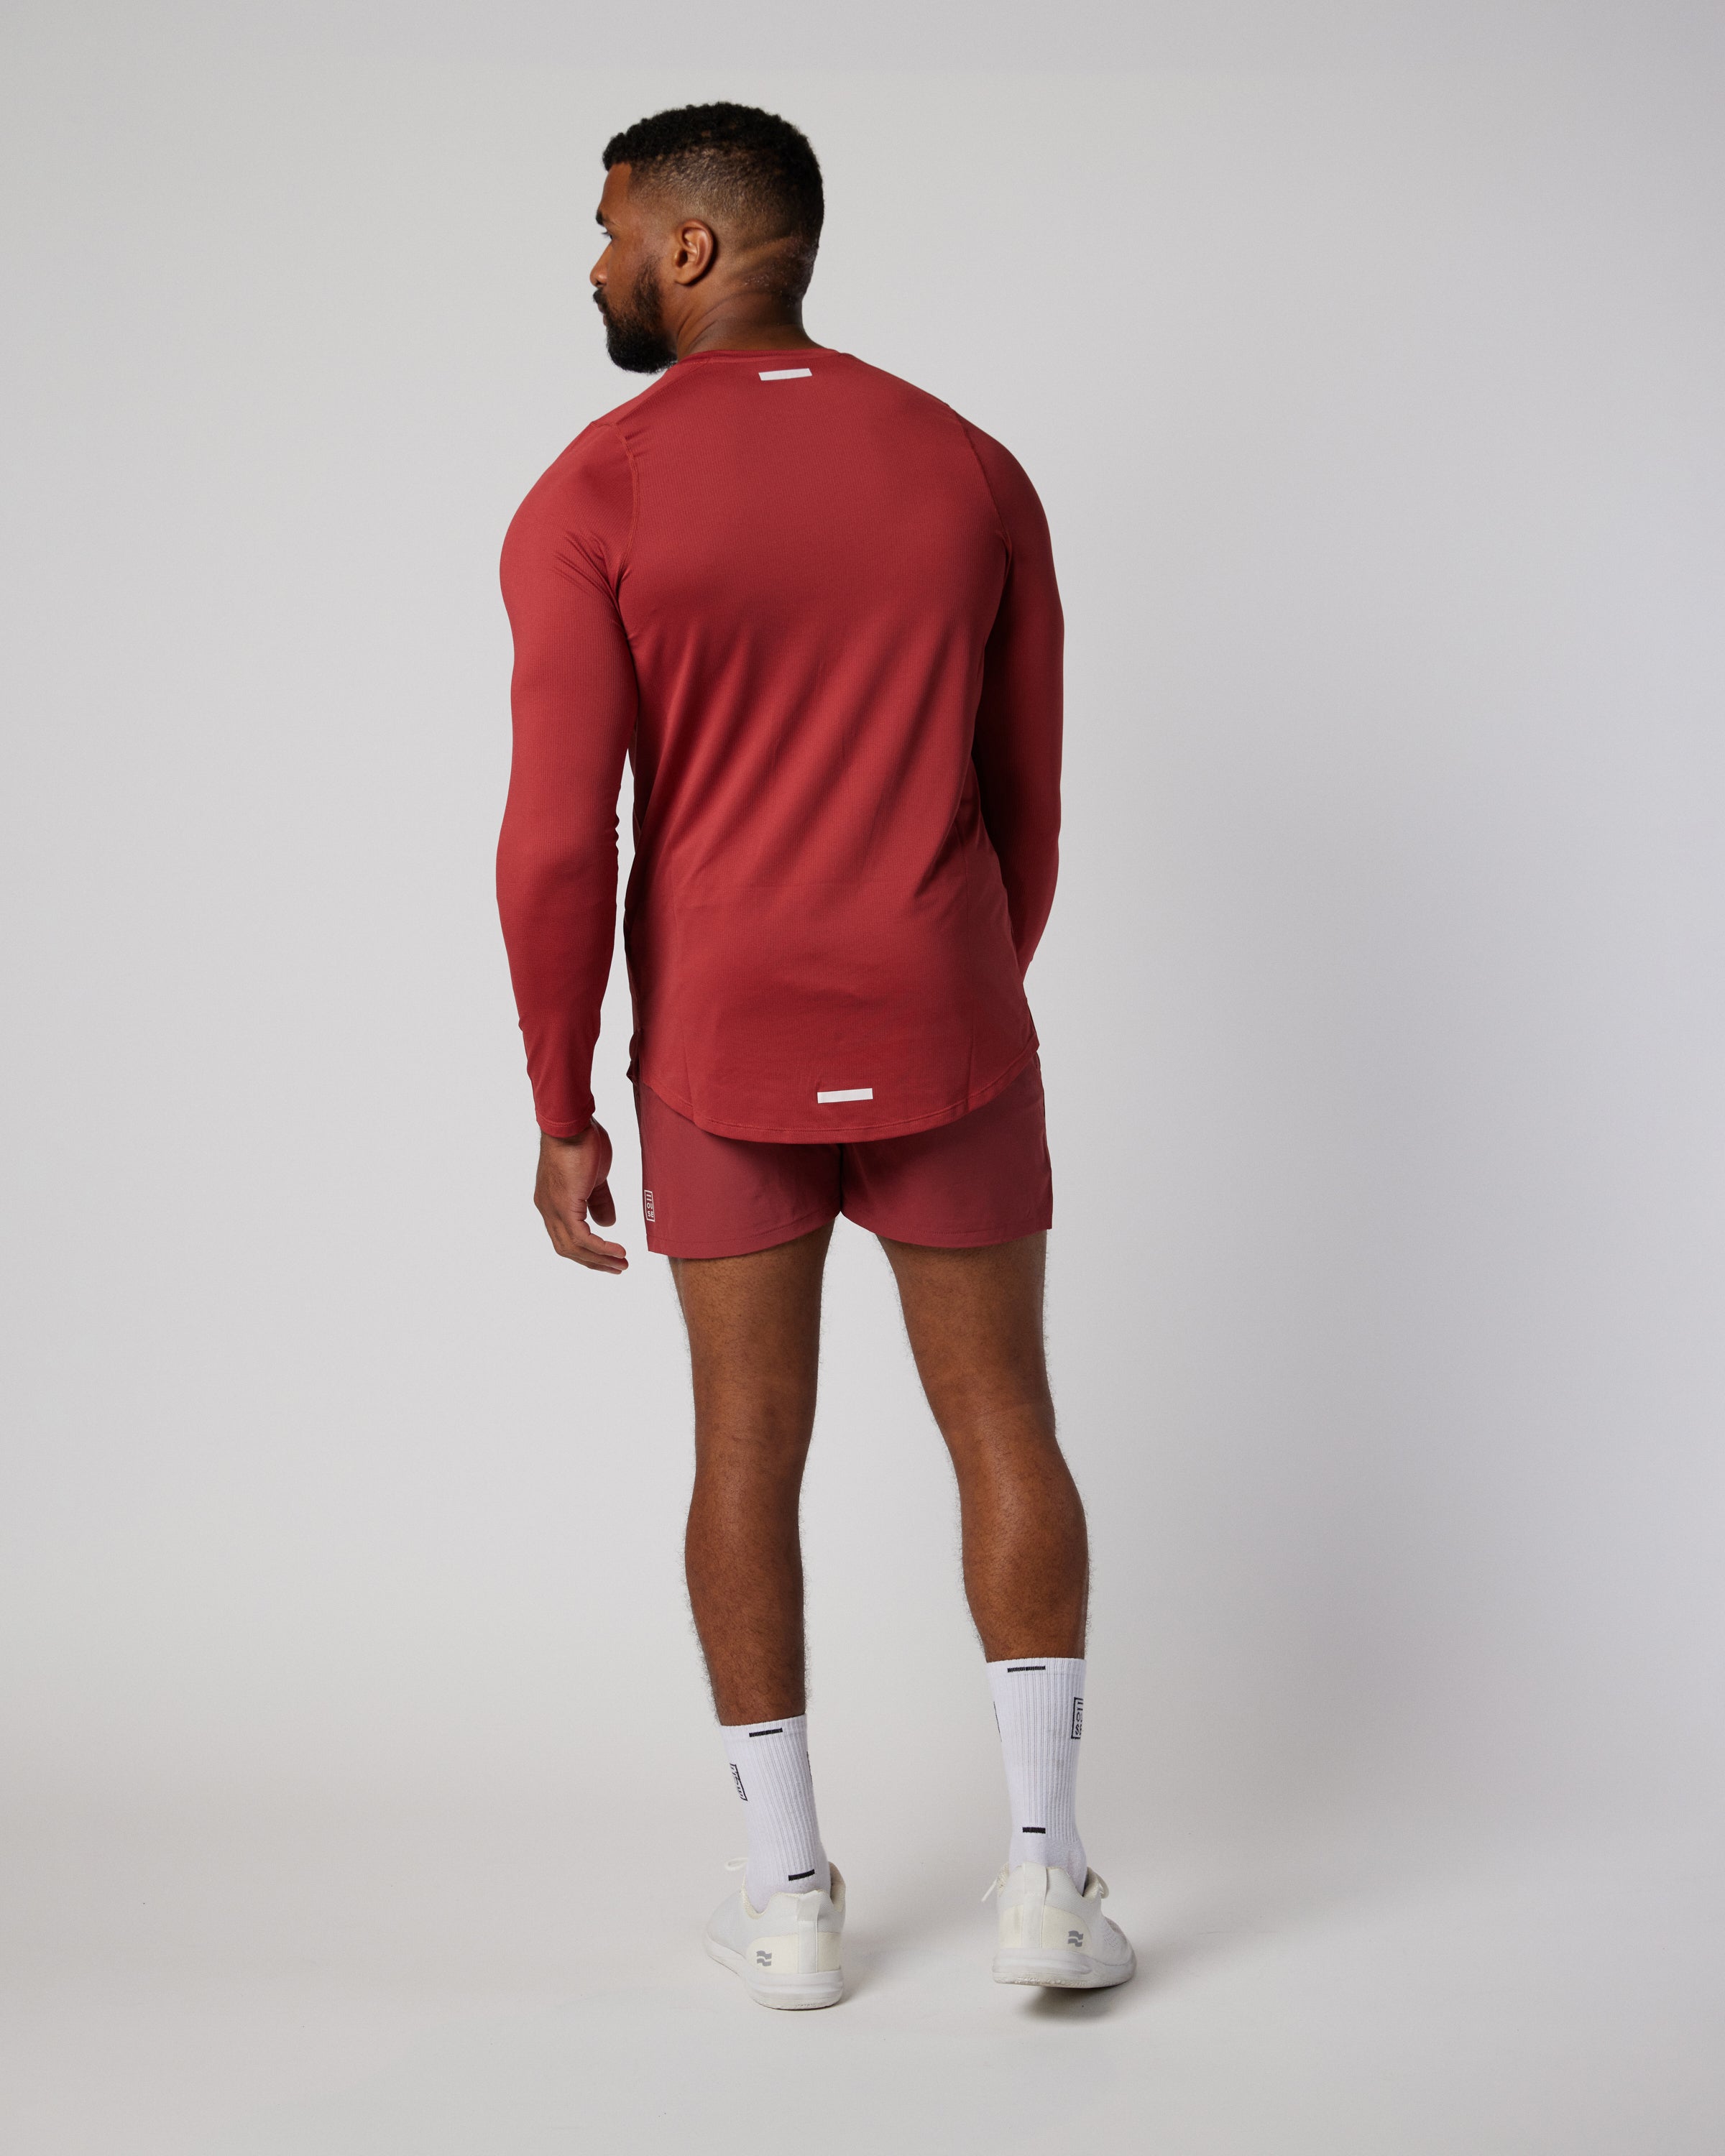 Mens athletic long sleeve top in mars red